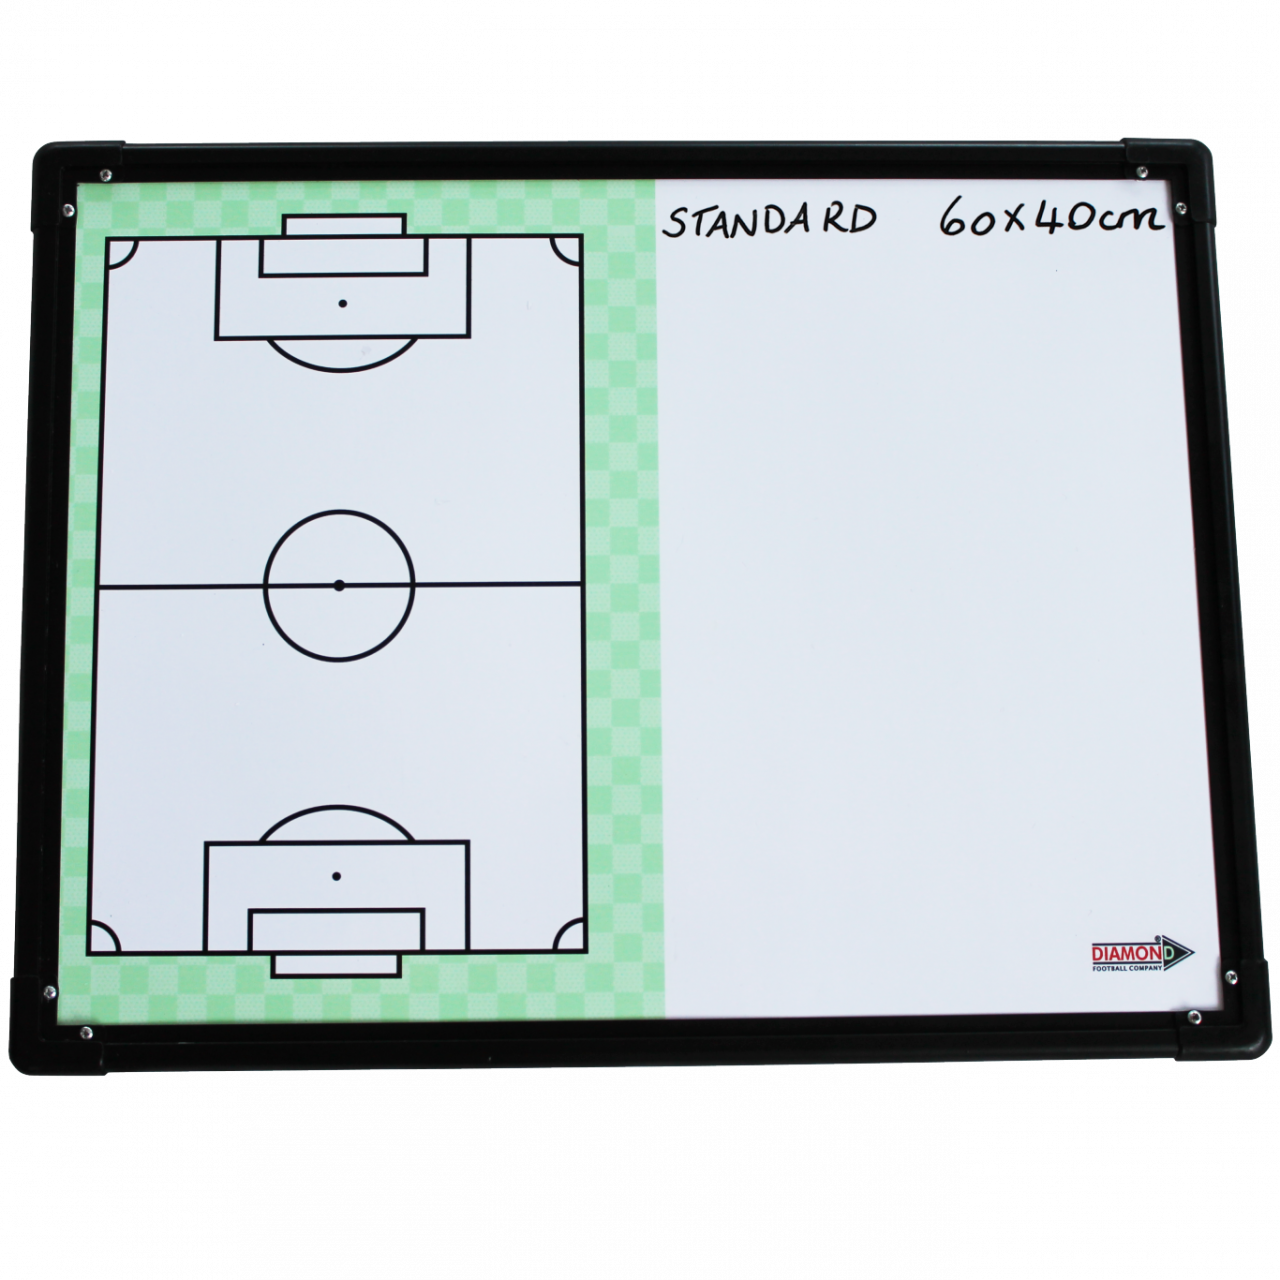 2 teams interactive soccer tactic board